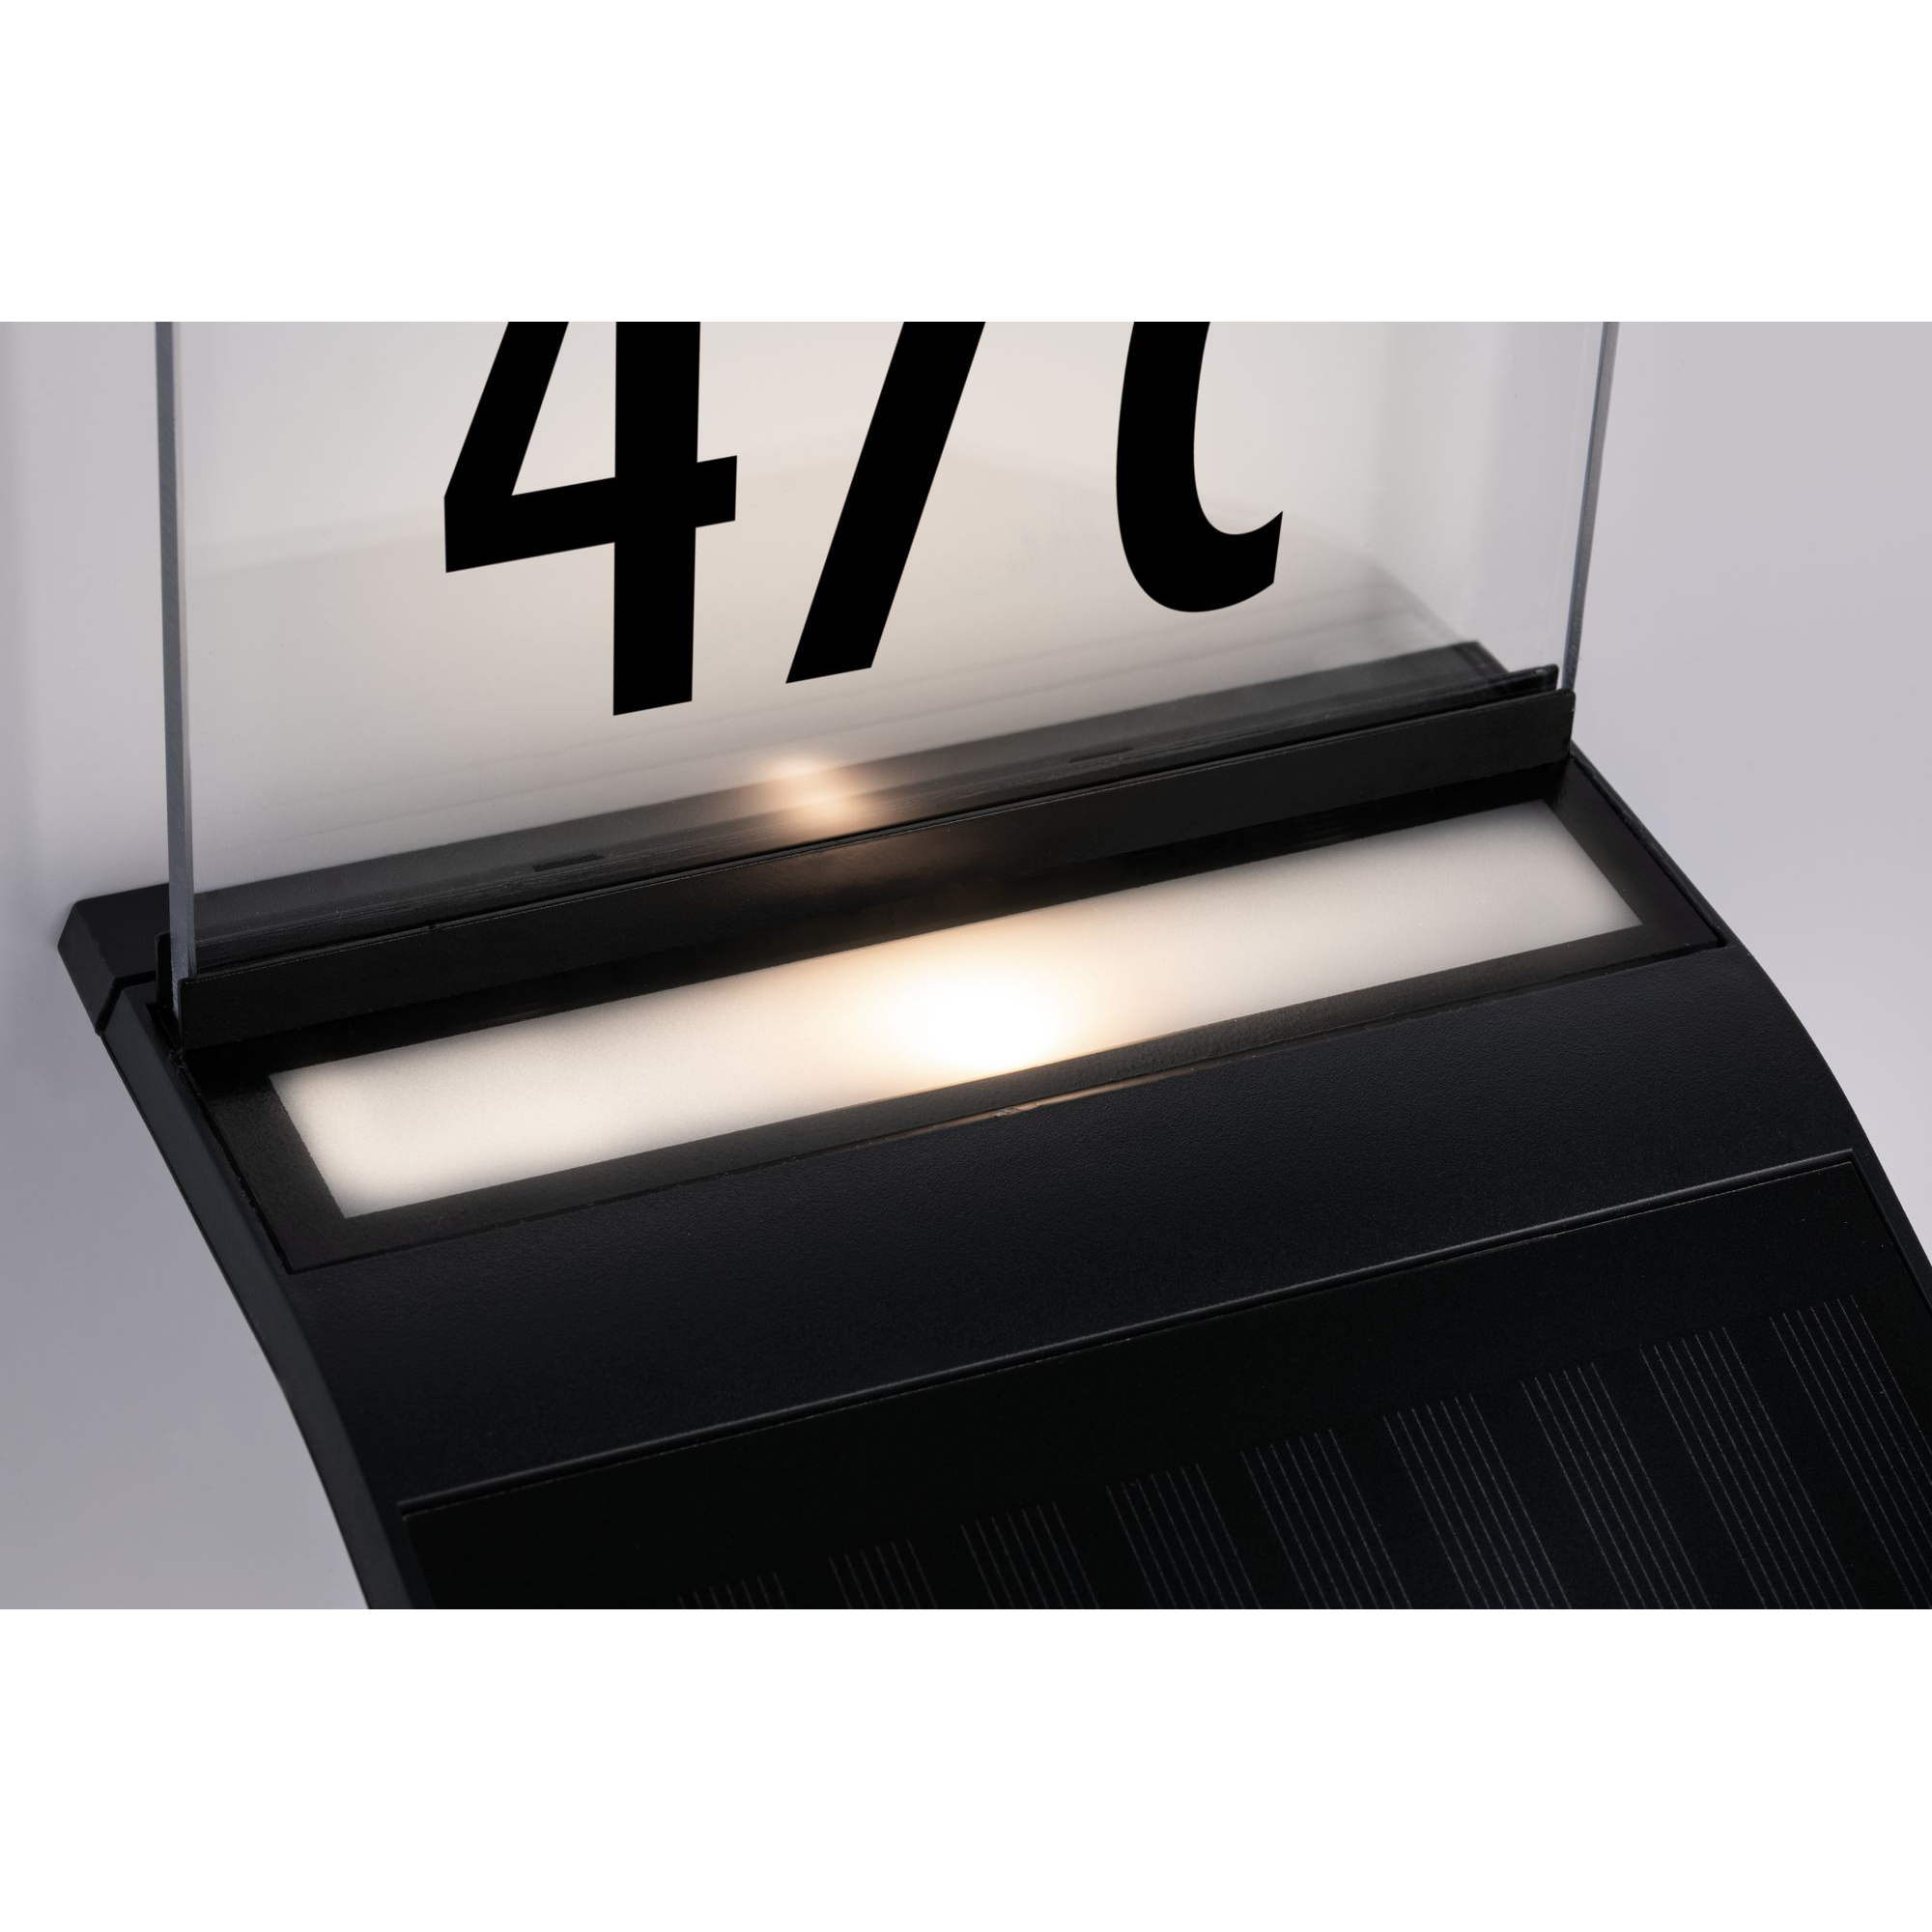 Solar-Hausnummernleuchte 'Yoko' mit Bewegungsmelder anthrazit 16 x 17,5 x 19 cm + product picture